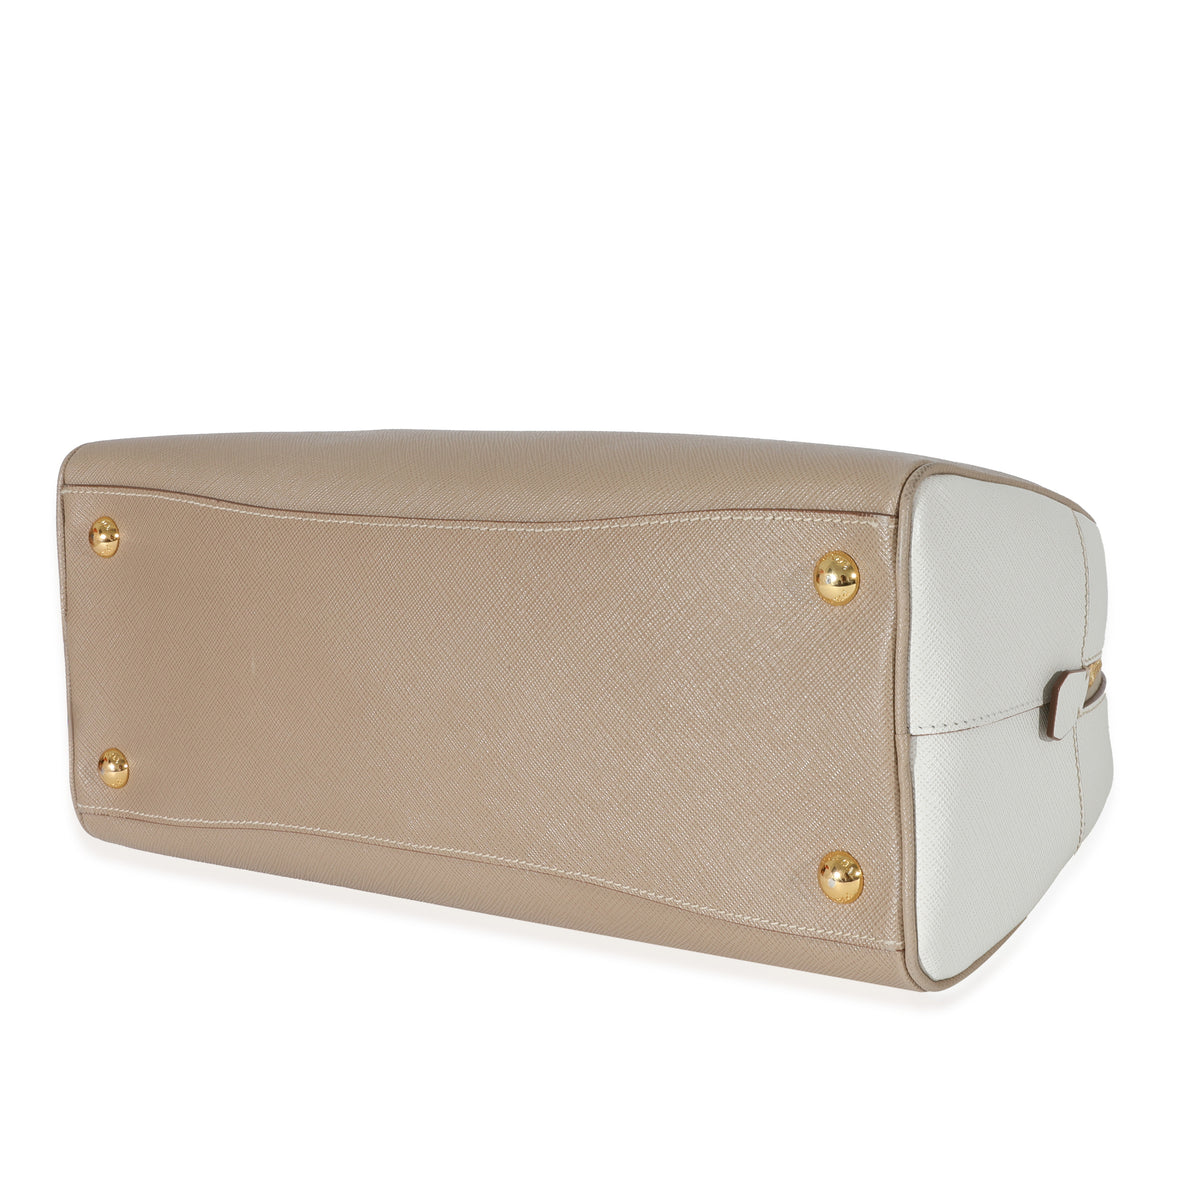 Prada Saffiano Lux Bowler Bag w/ Strap - White Handle Bags, Handbags -  PRA851554